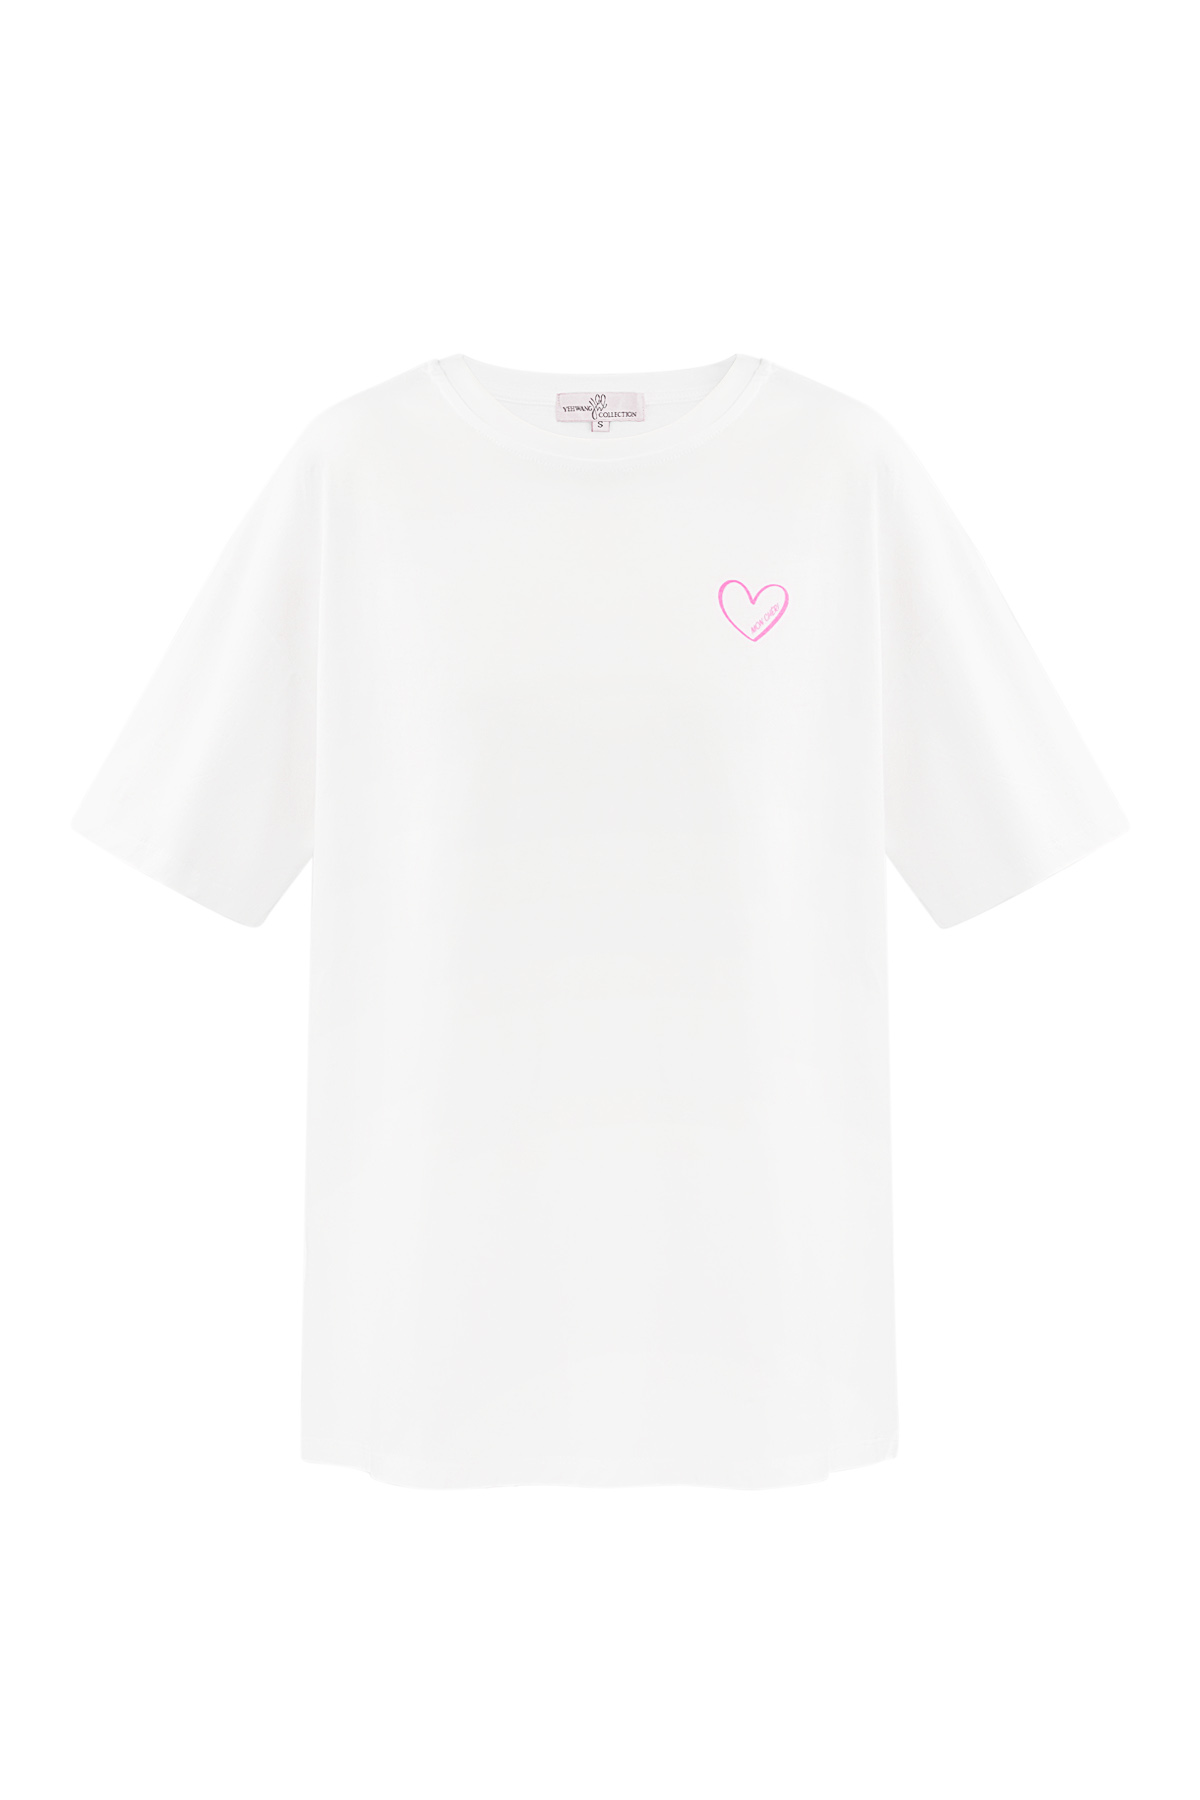 T-shirt mon cheri - white h5 